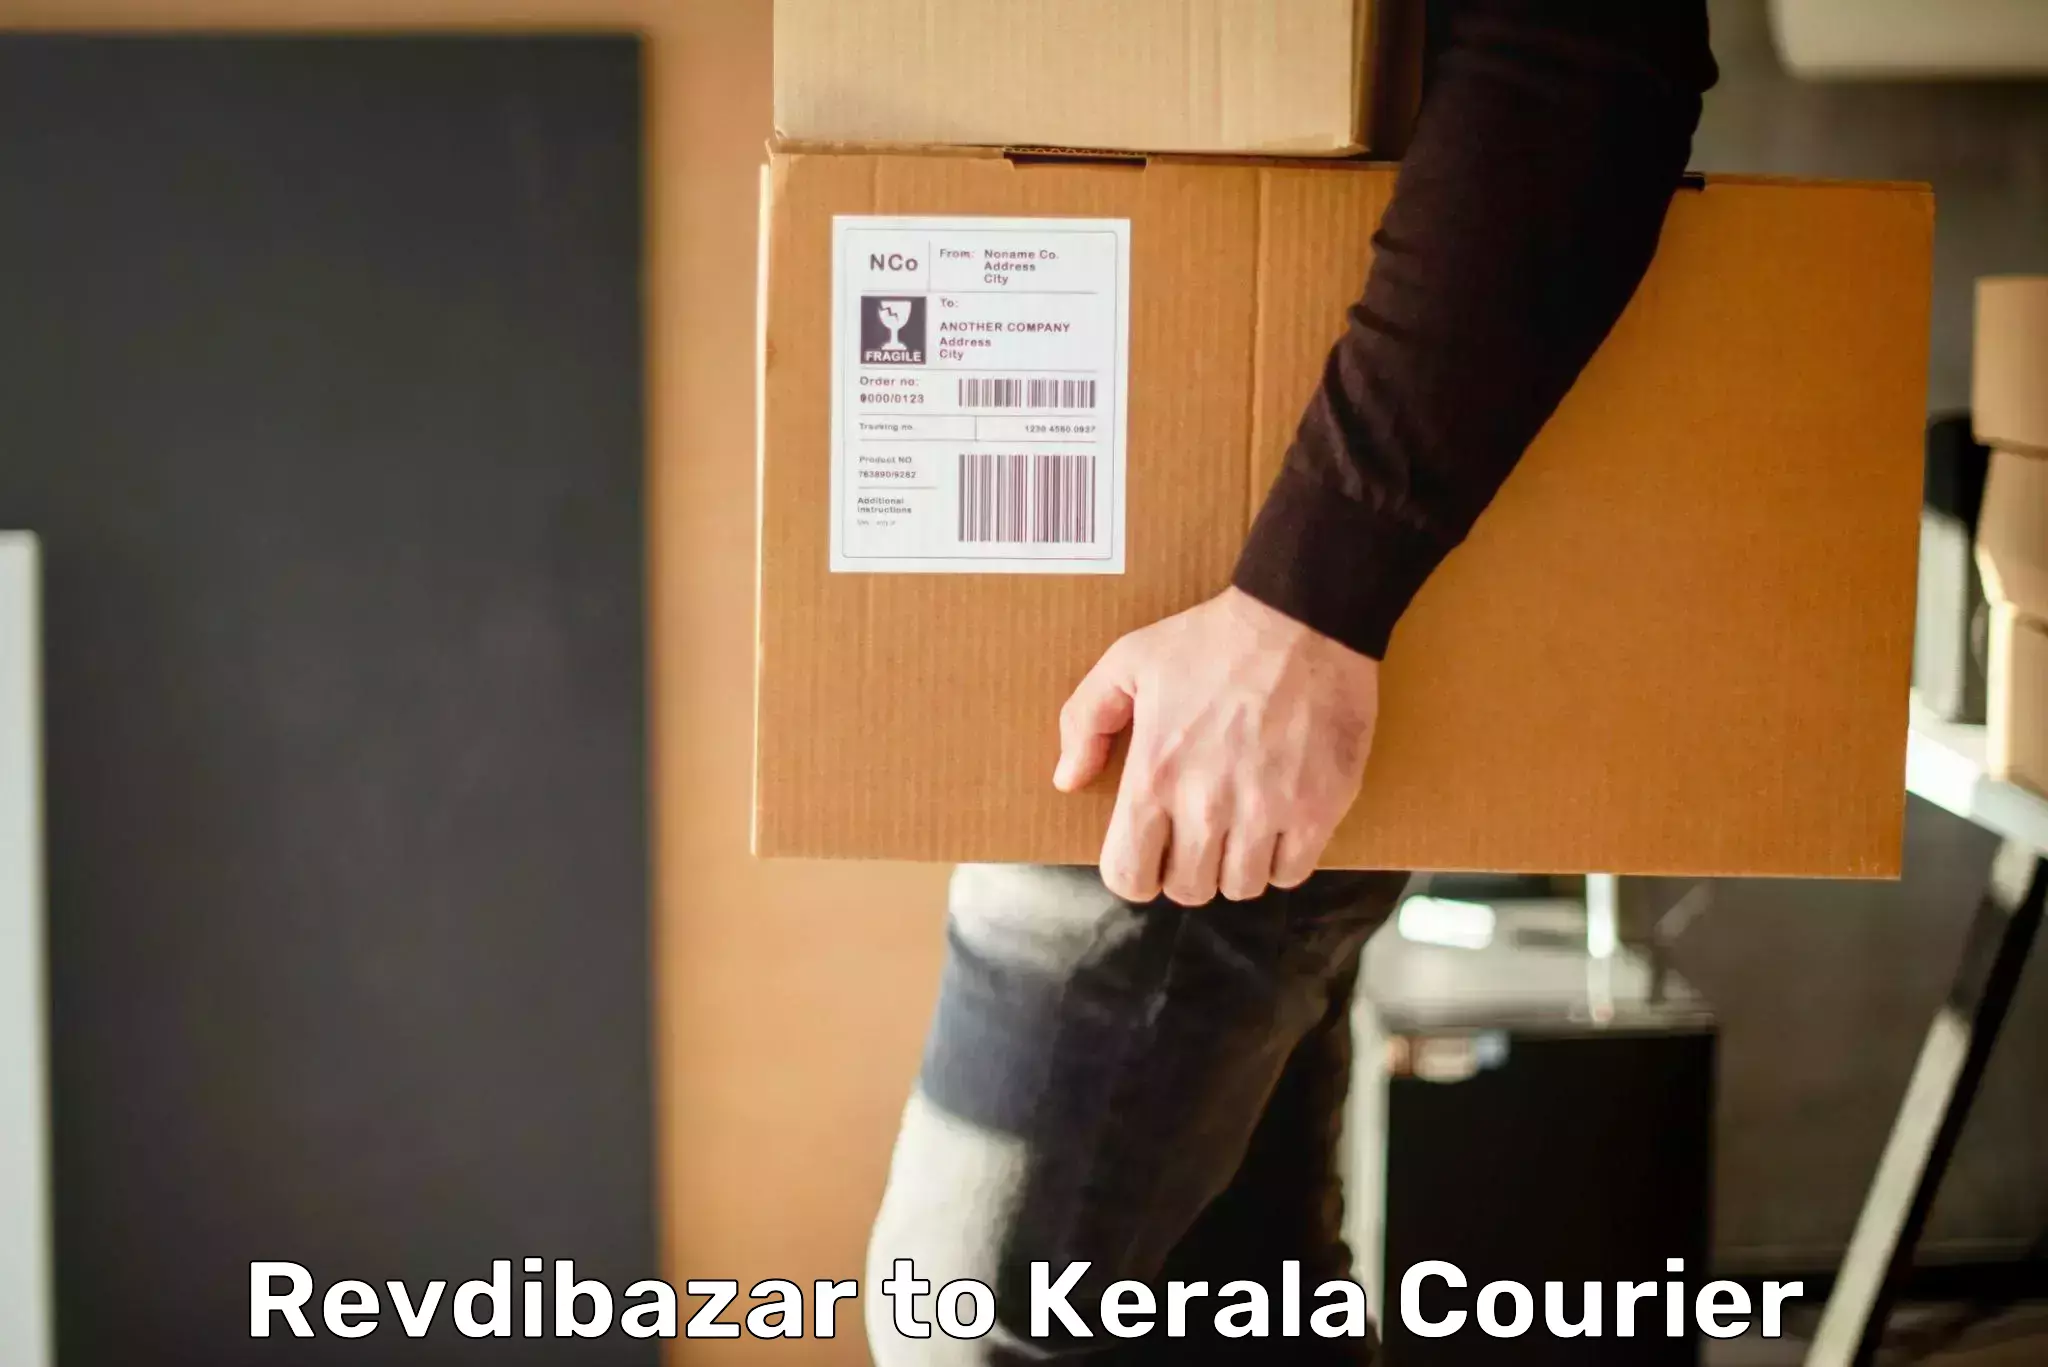 Efficient parcel delivery Revdibazar to Wayanad